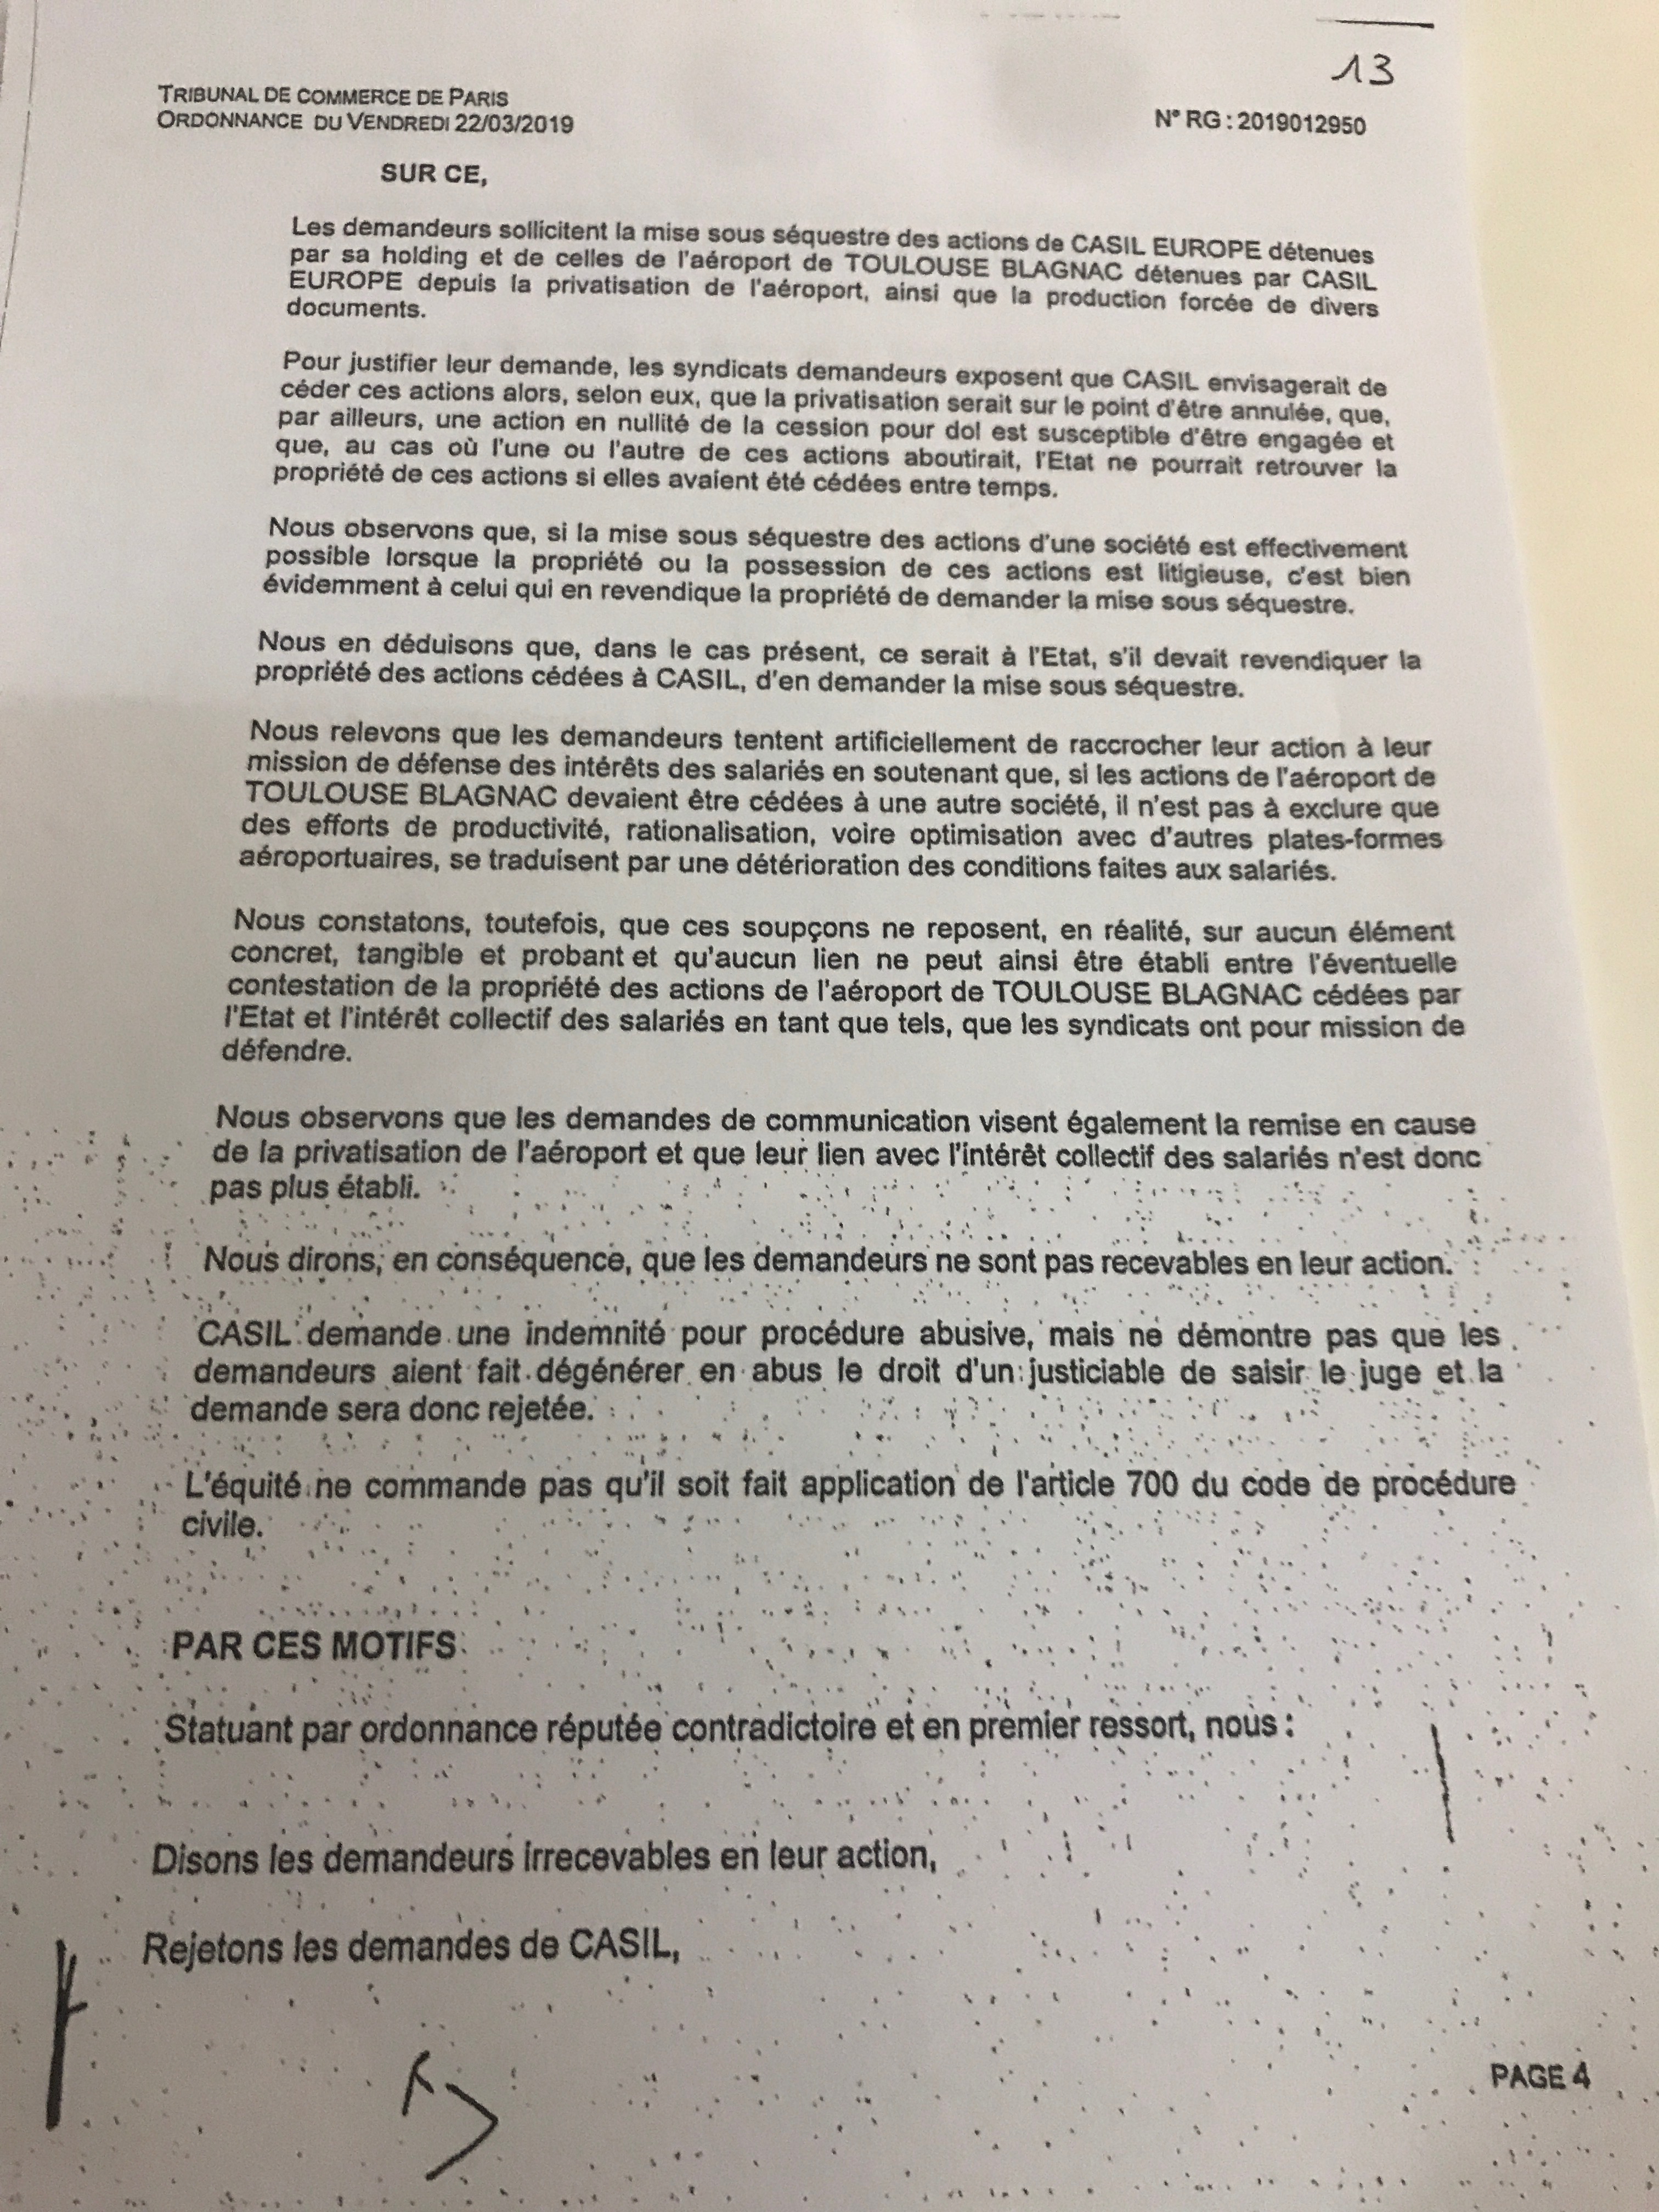 Aeroport Toulouse Blagnac : le juge des référés refuse le séquestre parce que les syndicats ne seraient "pas recevables" en leur action